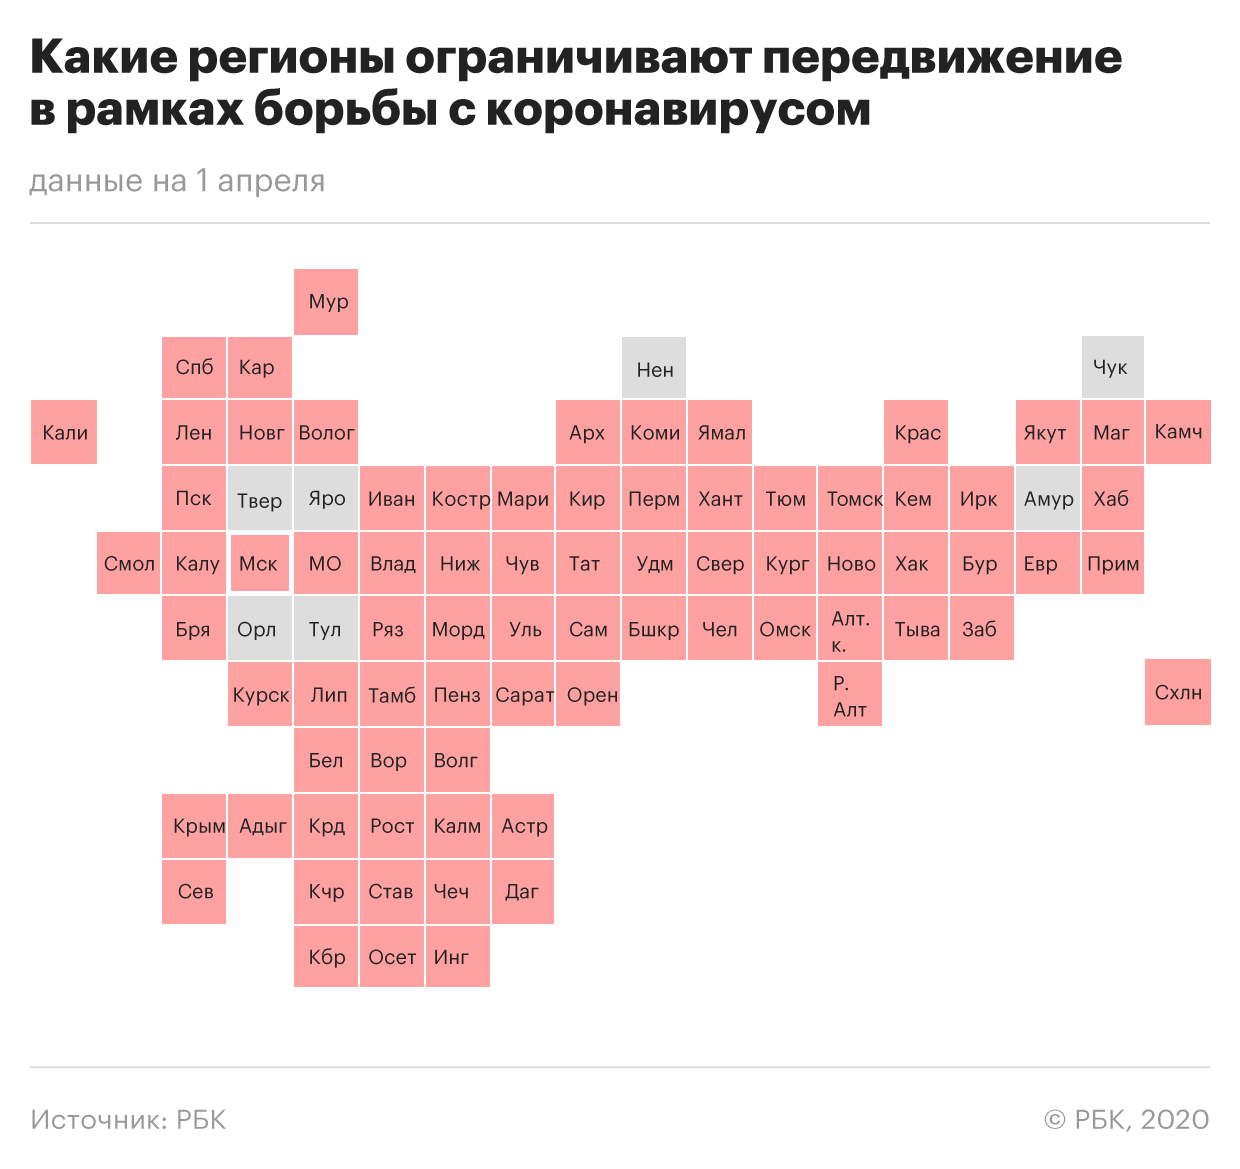 «Коронавирус в России»: Где и сколько заболевших на сегодня, последние новости на 04.04.2020 — Авиасообщение полностью прекращено, главное к этому часу